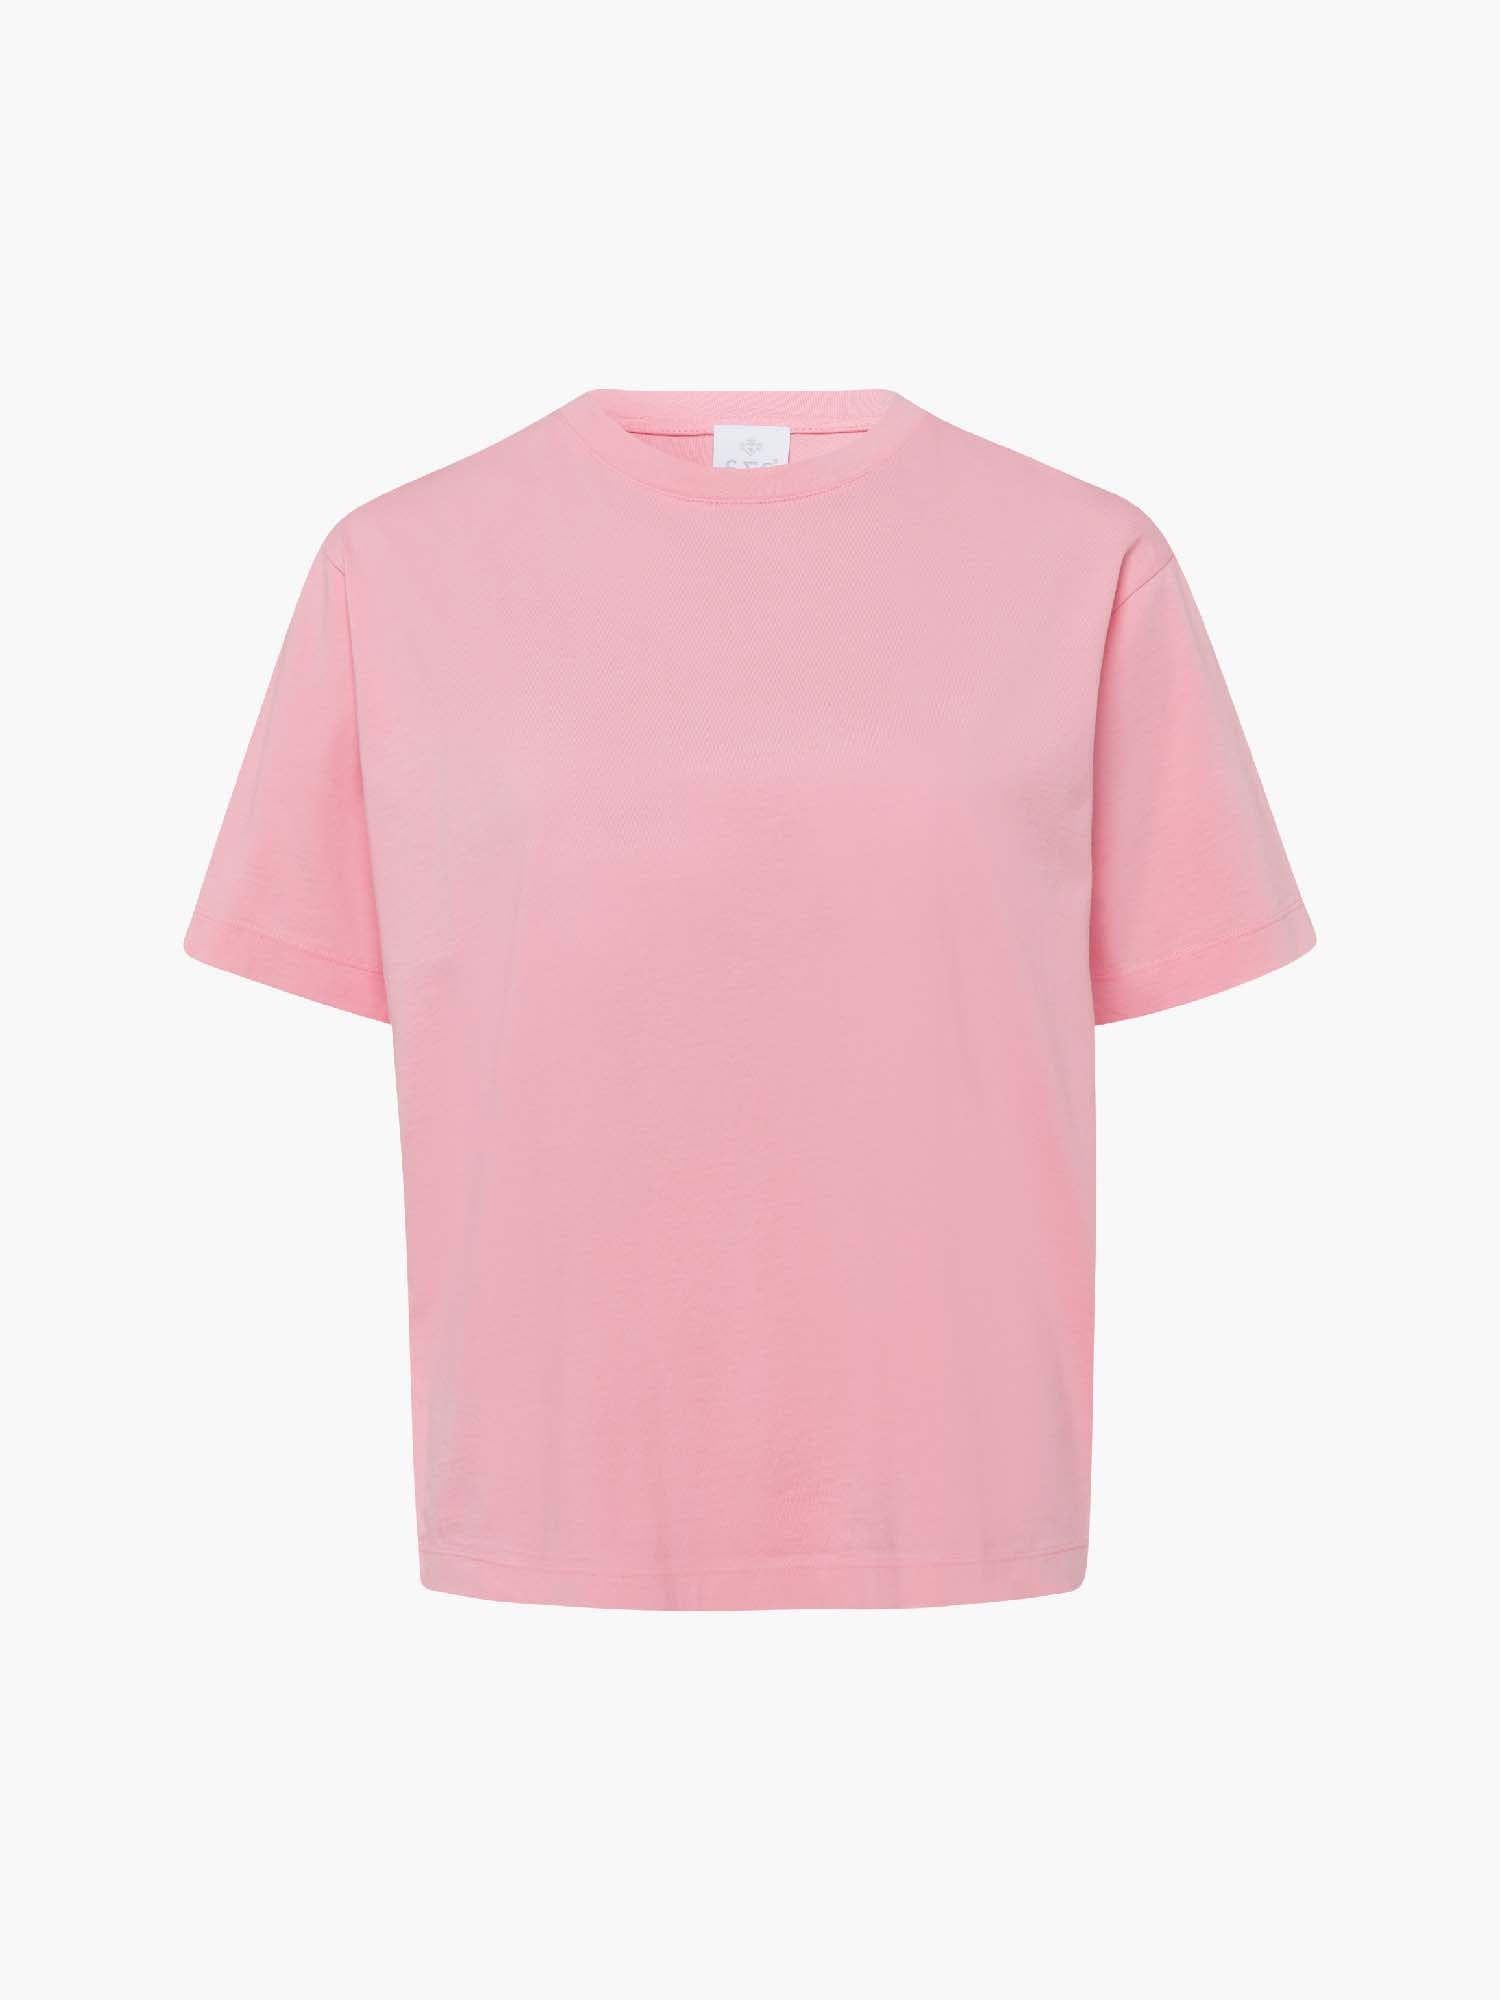 FTC-CASHMERE-OUTLET-SALE-T-Shirt RN 1/2 100% Organic Cotton-Shirts-S-Rosado-MUNICH_VILLAGE-by-ARCHIVIST